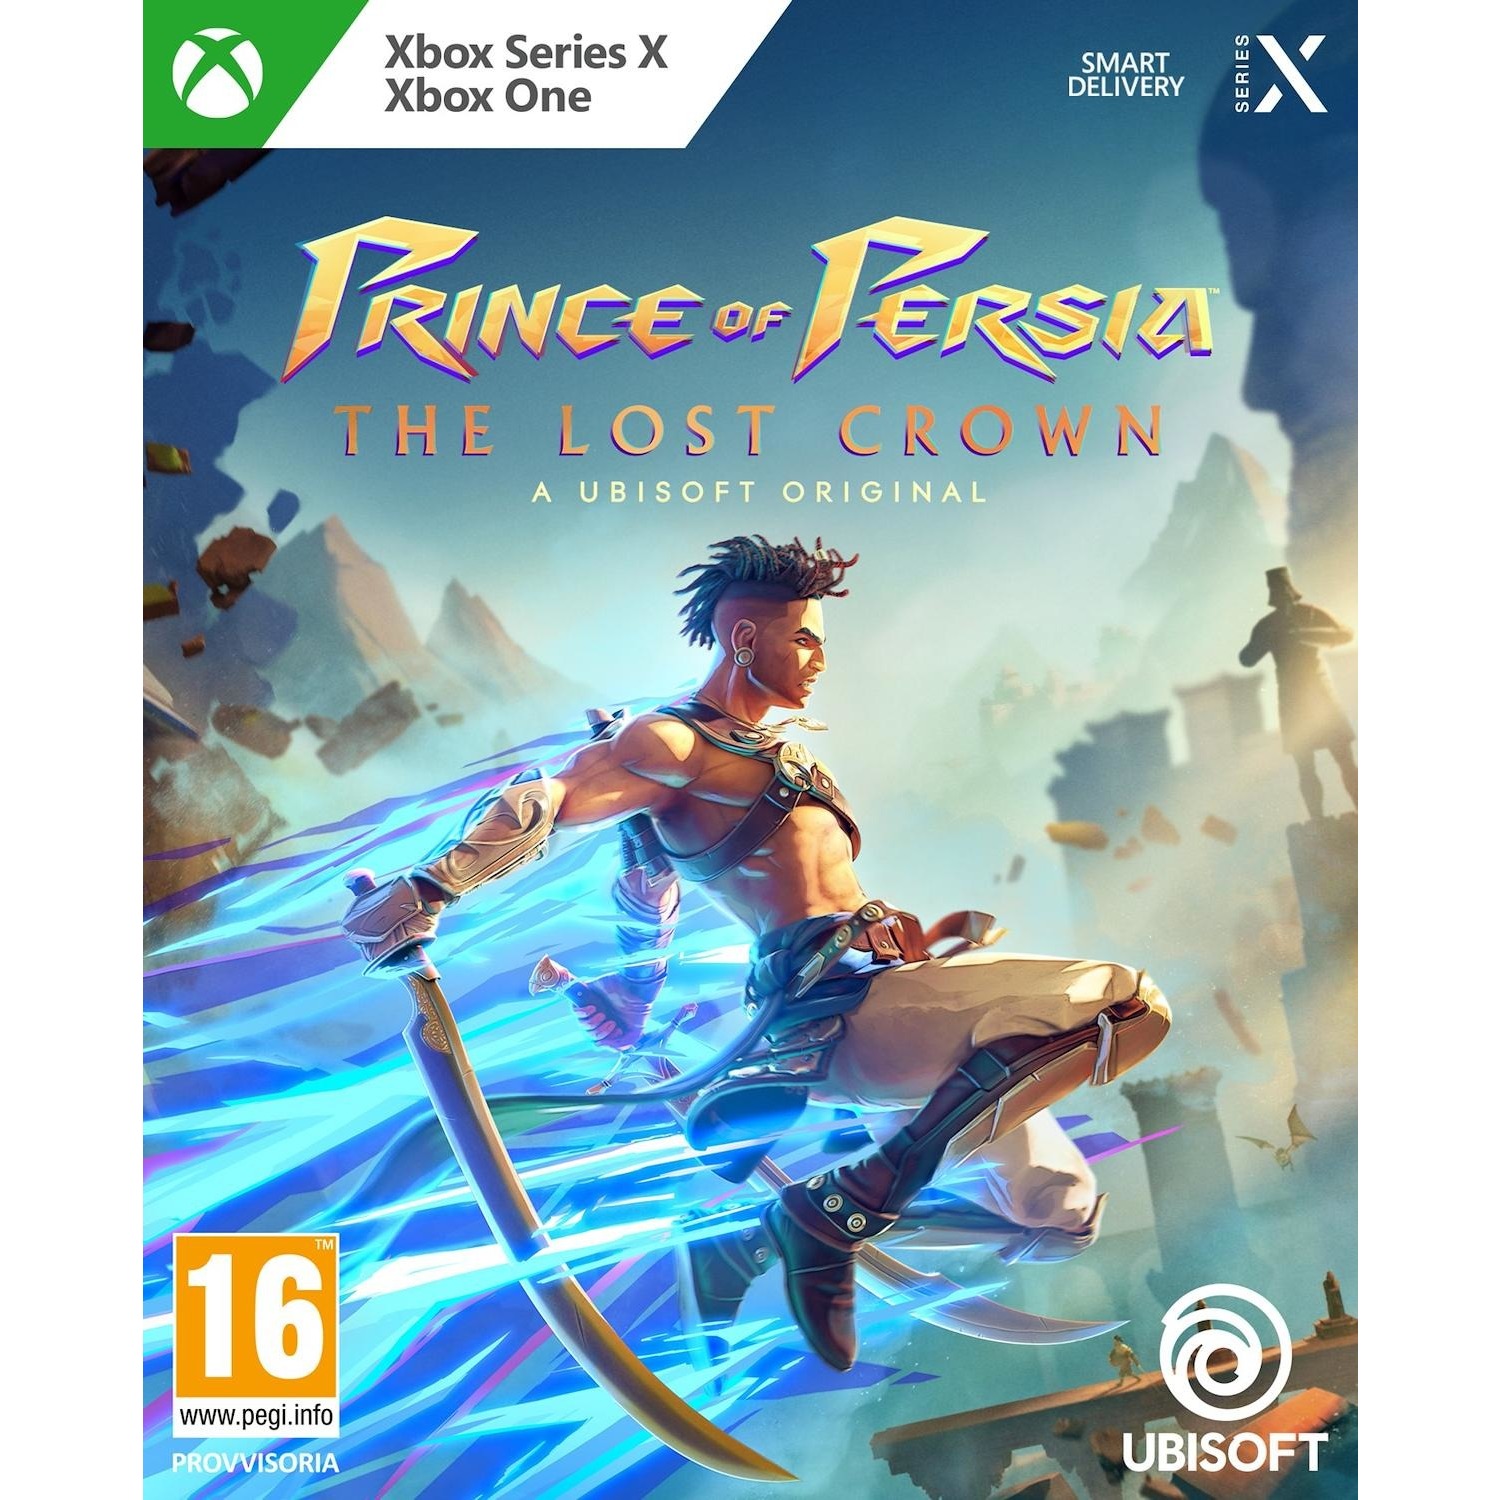 Immagine per Gioco XBOX ONE/Series X Prince of Persia: The Lost Crown da DIMOStore